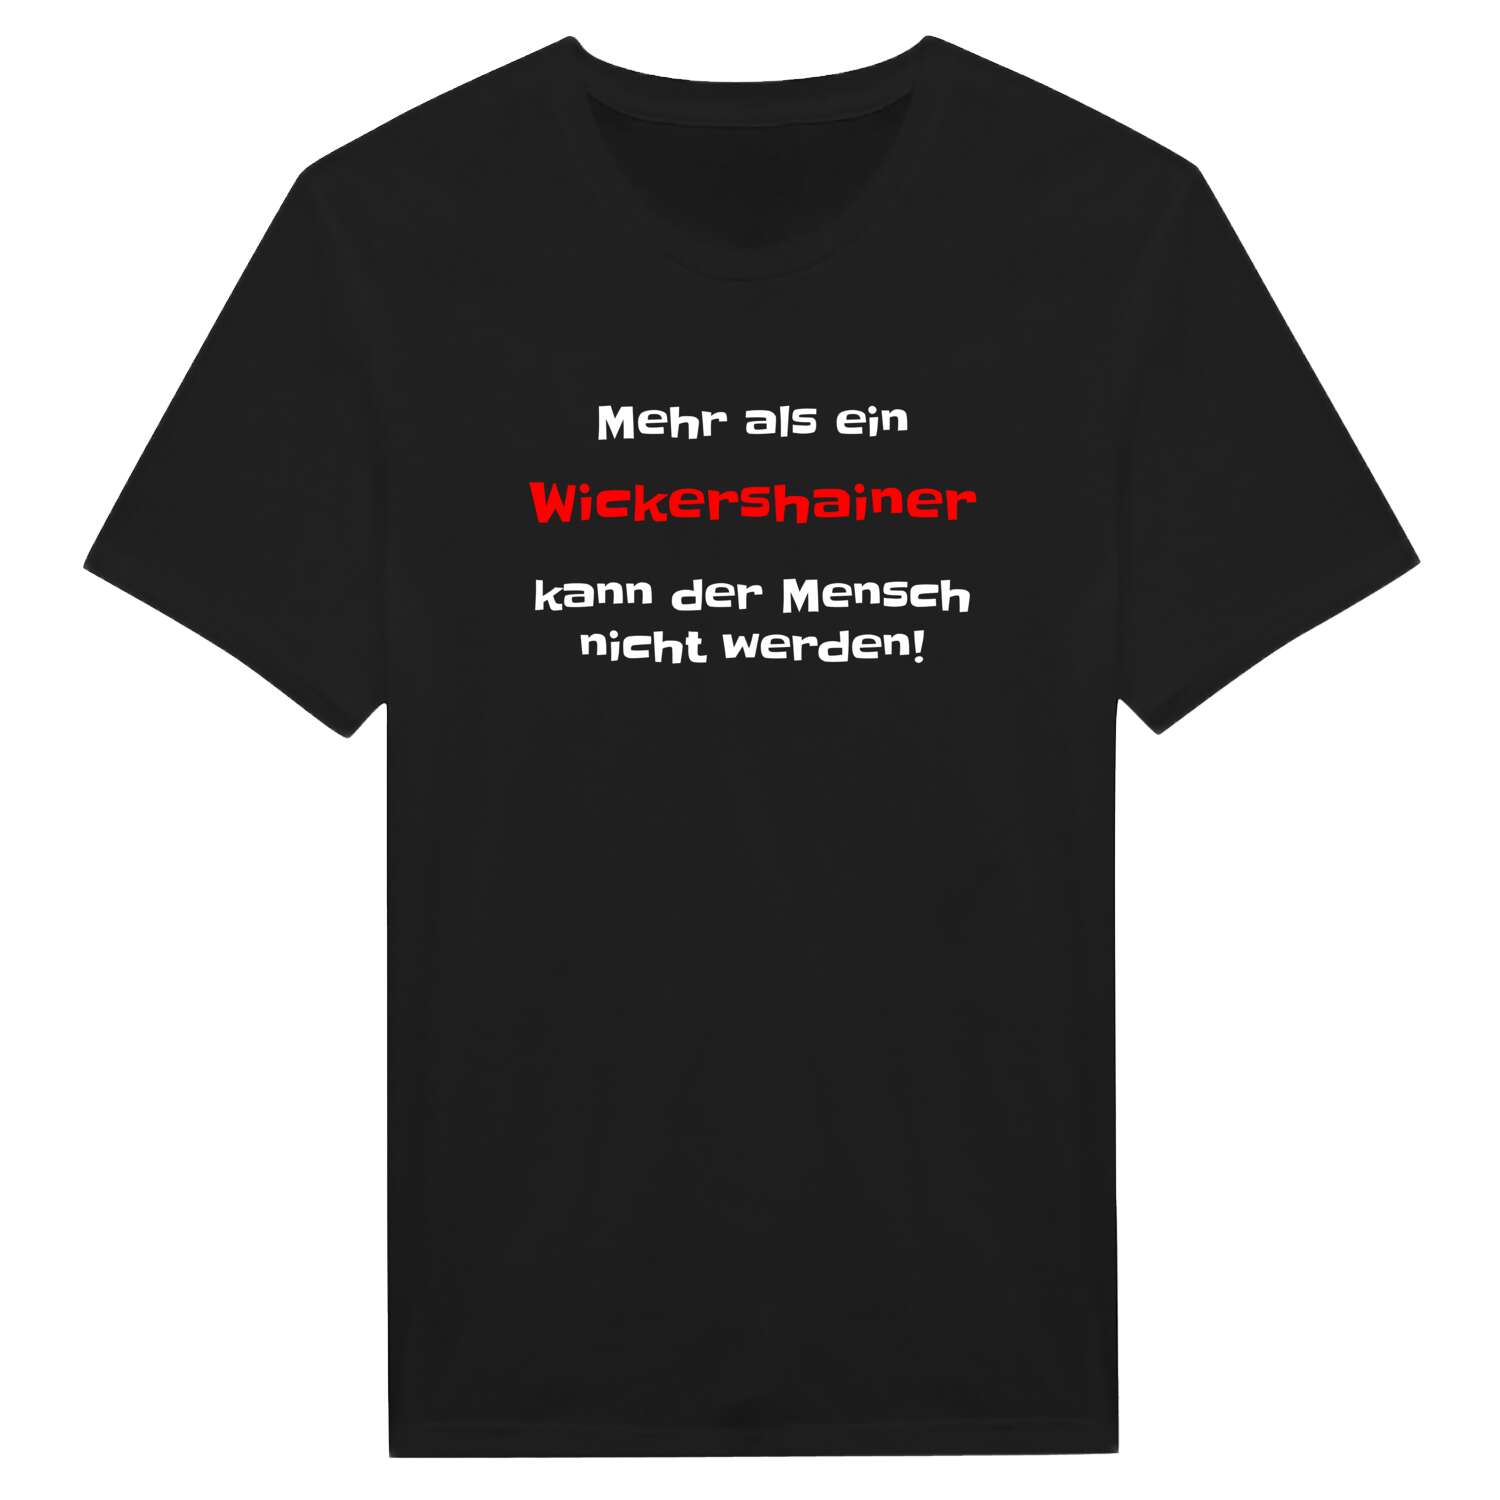 Wickershain T-Shirt »Mehr als ein«